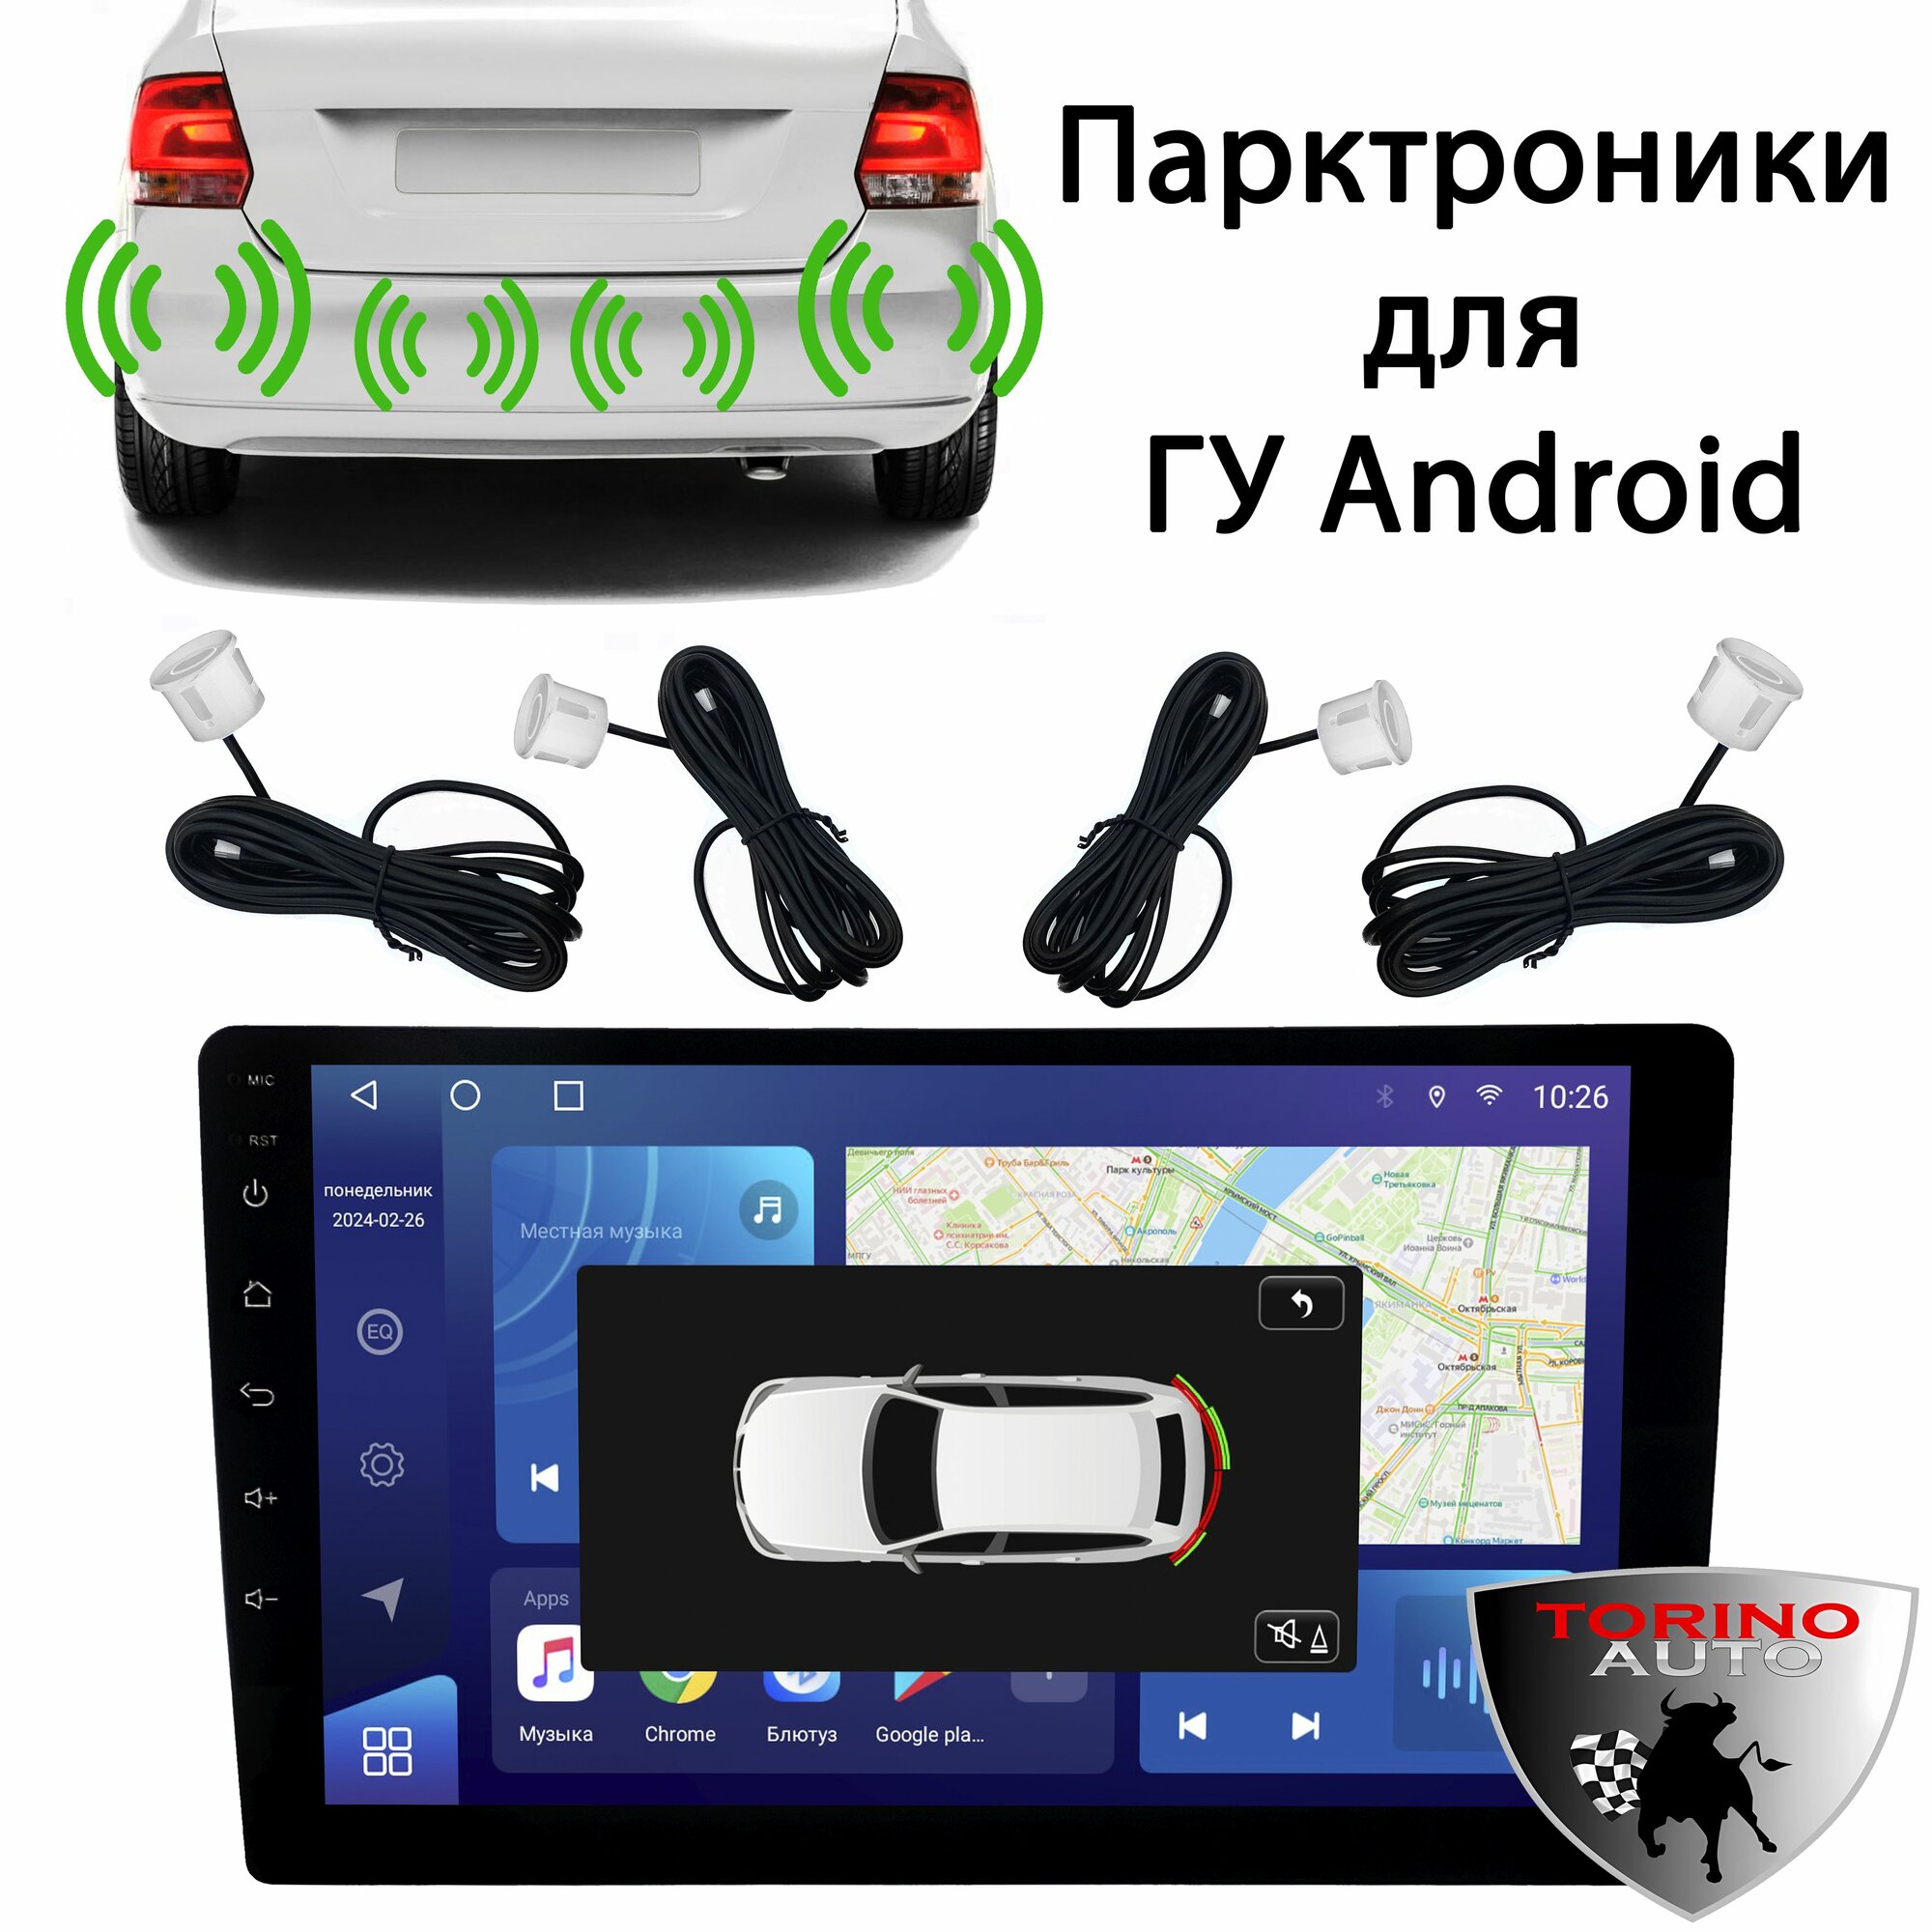 Парктроники цифровые задние для Android магнитол белые / Парковочный радар задний для головных устройств Android